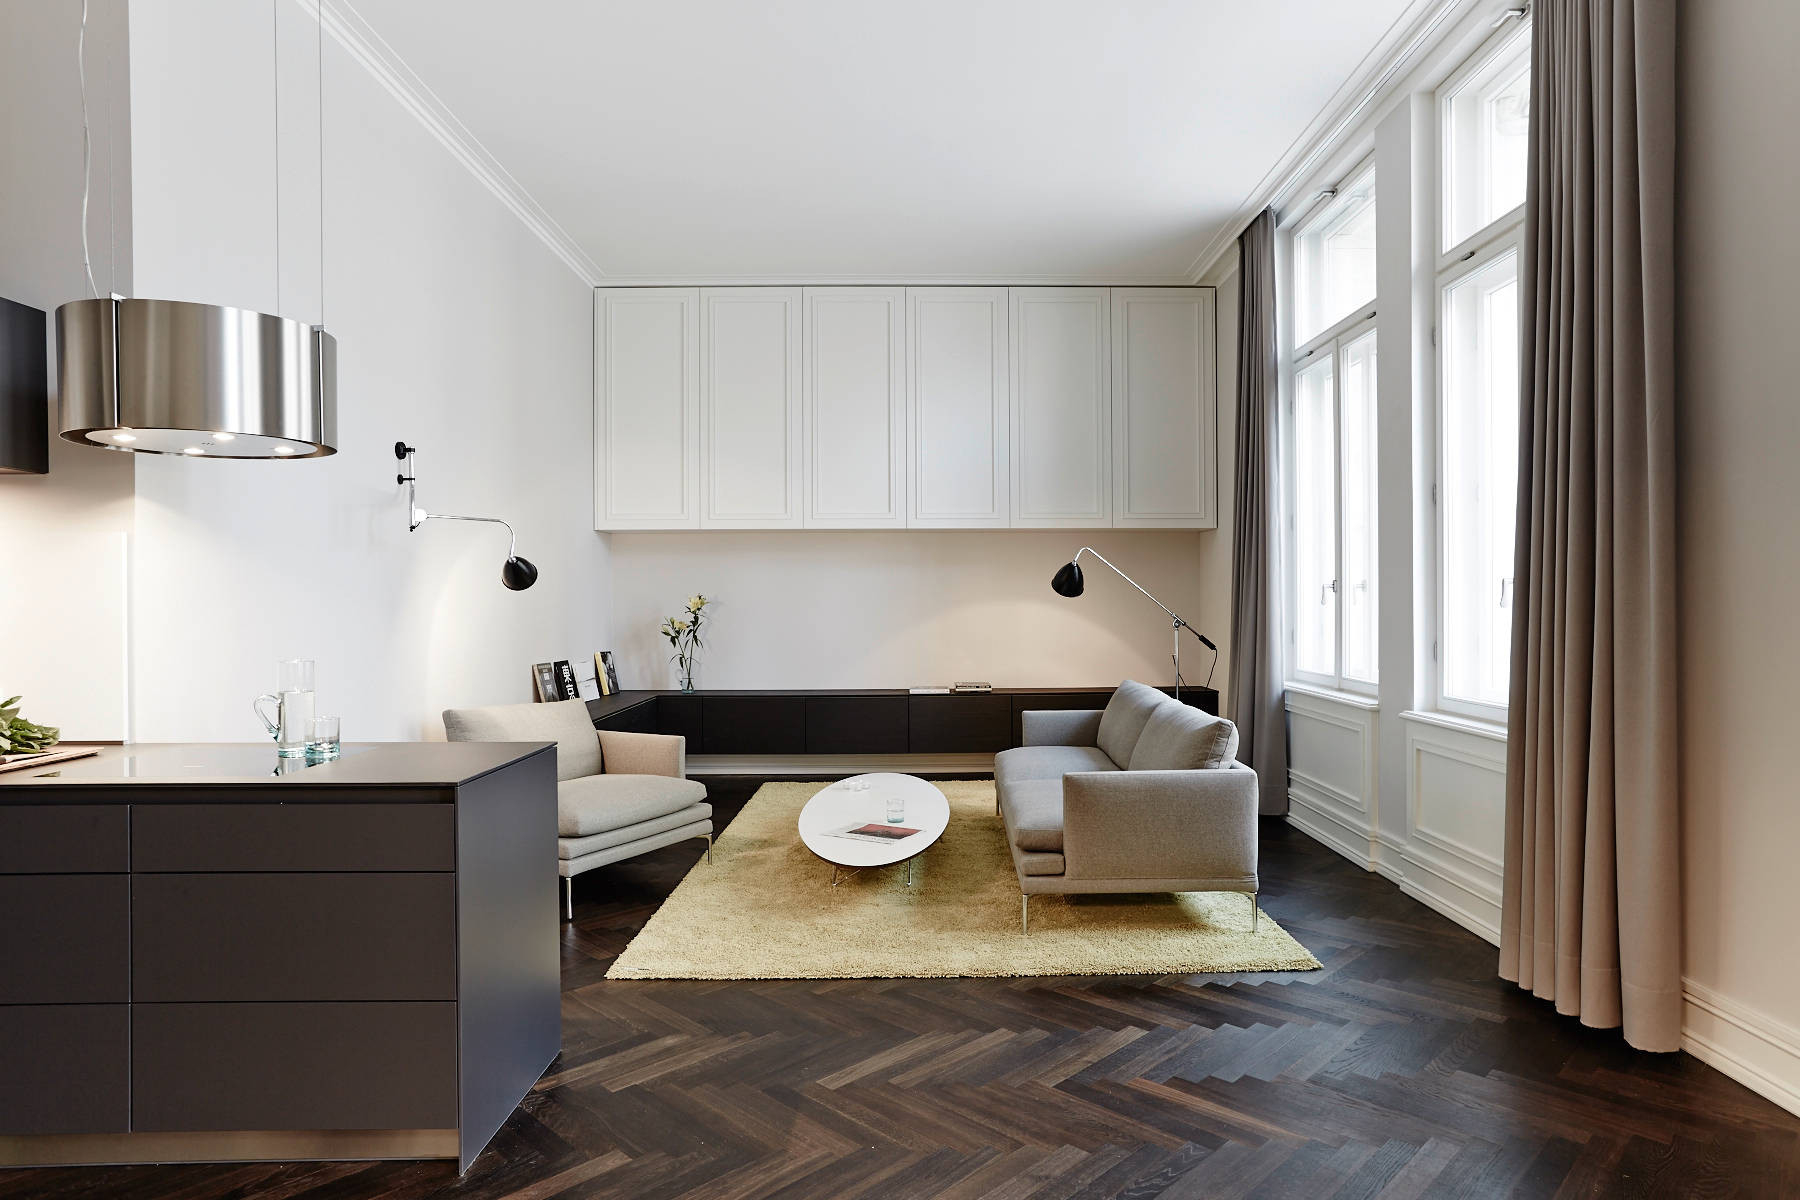 Holzboden: Welche Möbel Und Wandfarben Passen Dazu inside Wohnzimmer Dunkler Boden Welche Wandfarbe